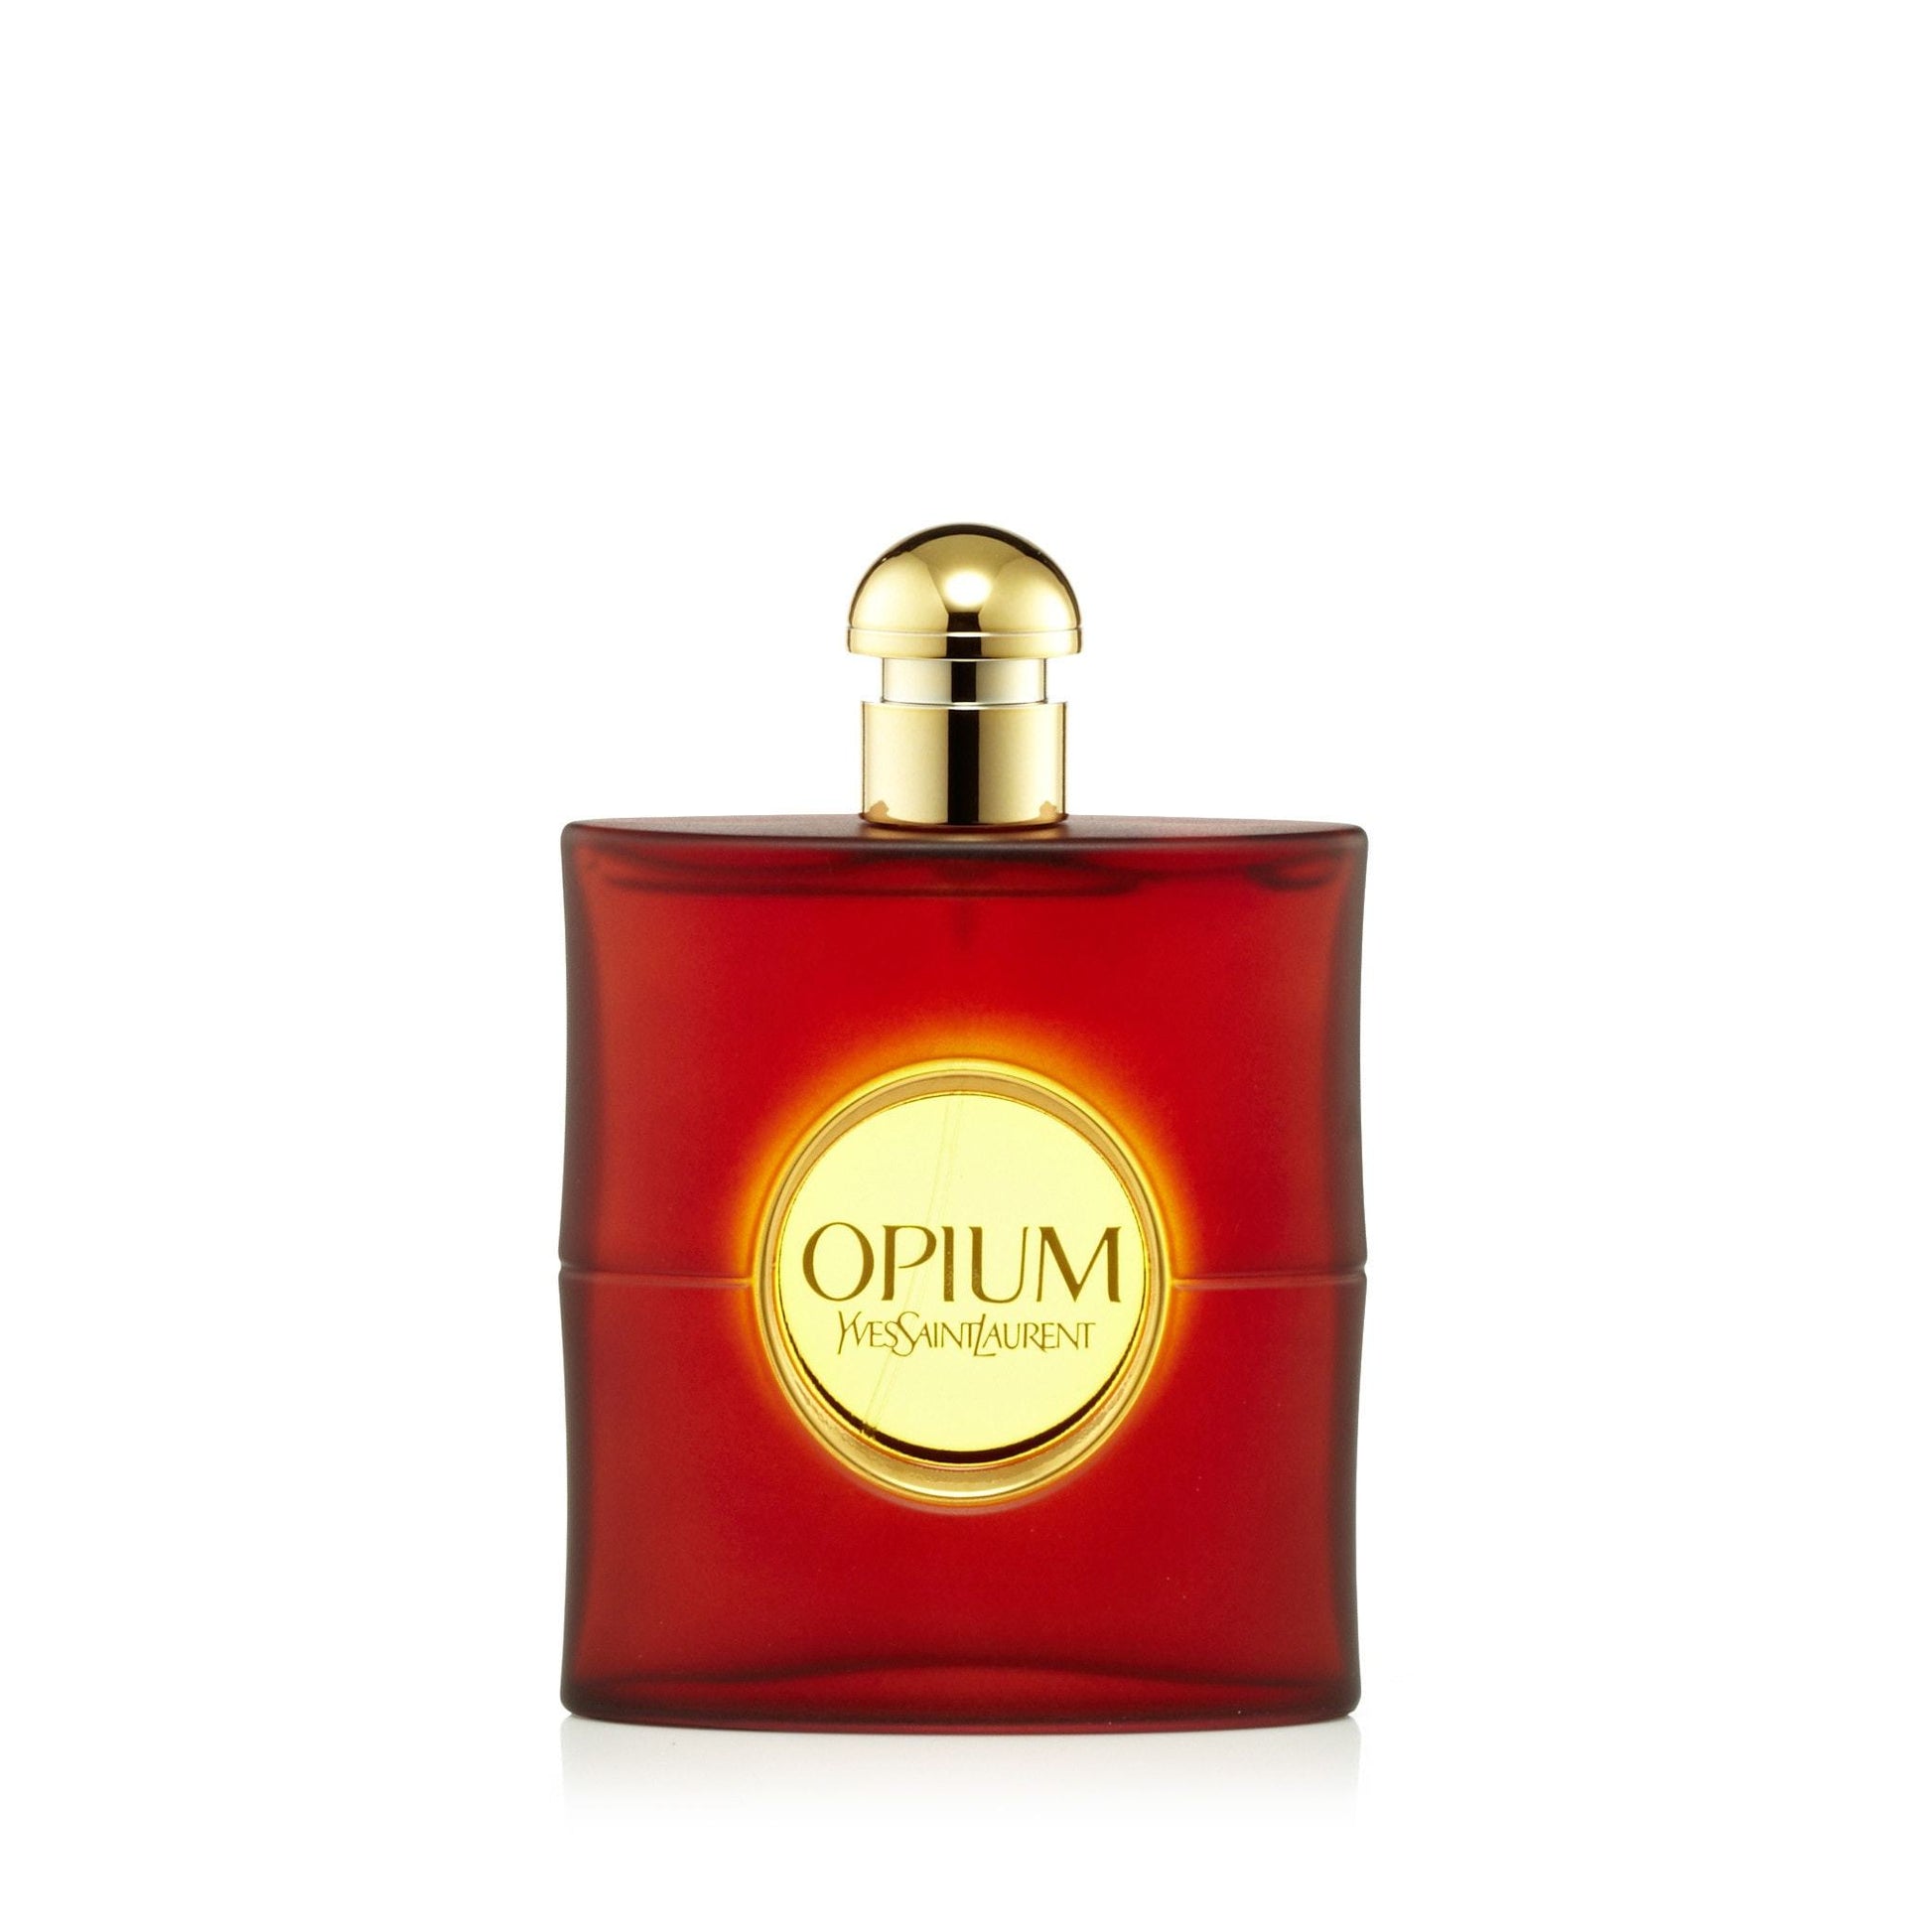 Opium Eau de Toilette Spray for Women by Yves Saint Laurent, Product image 2